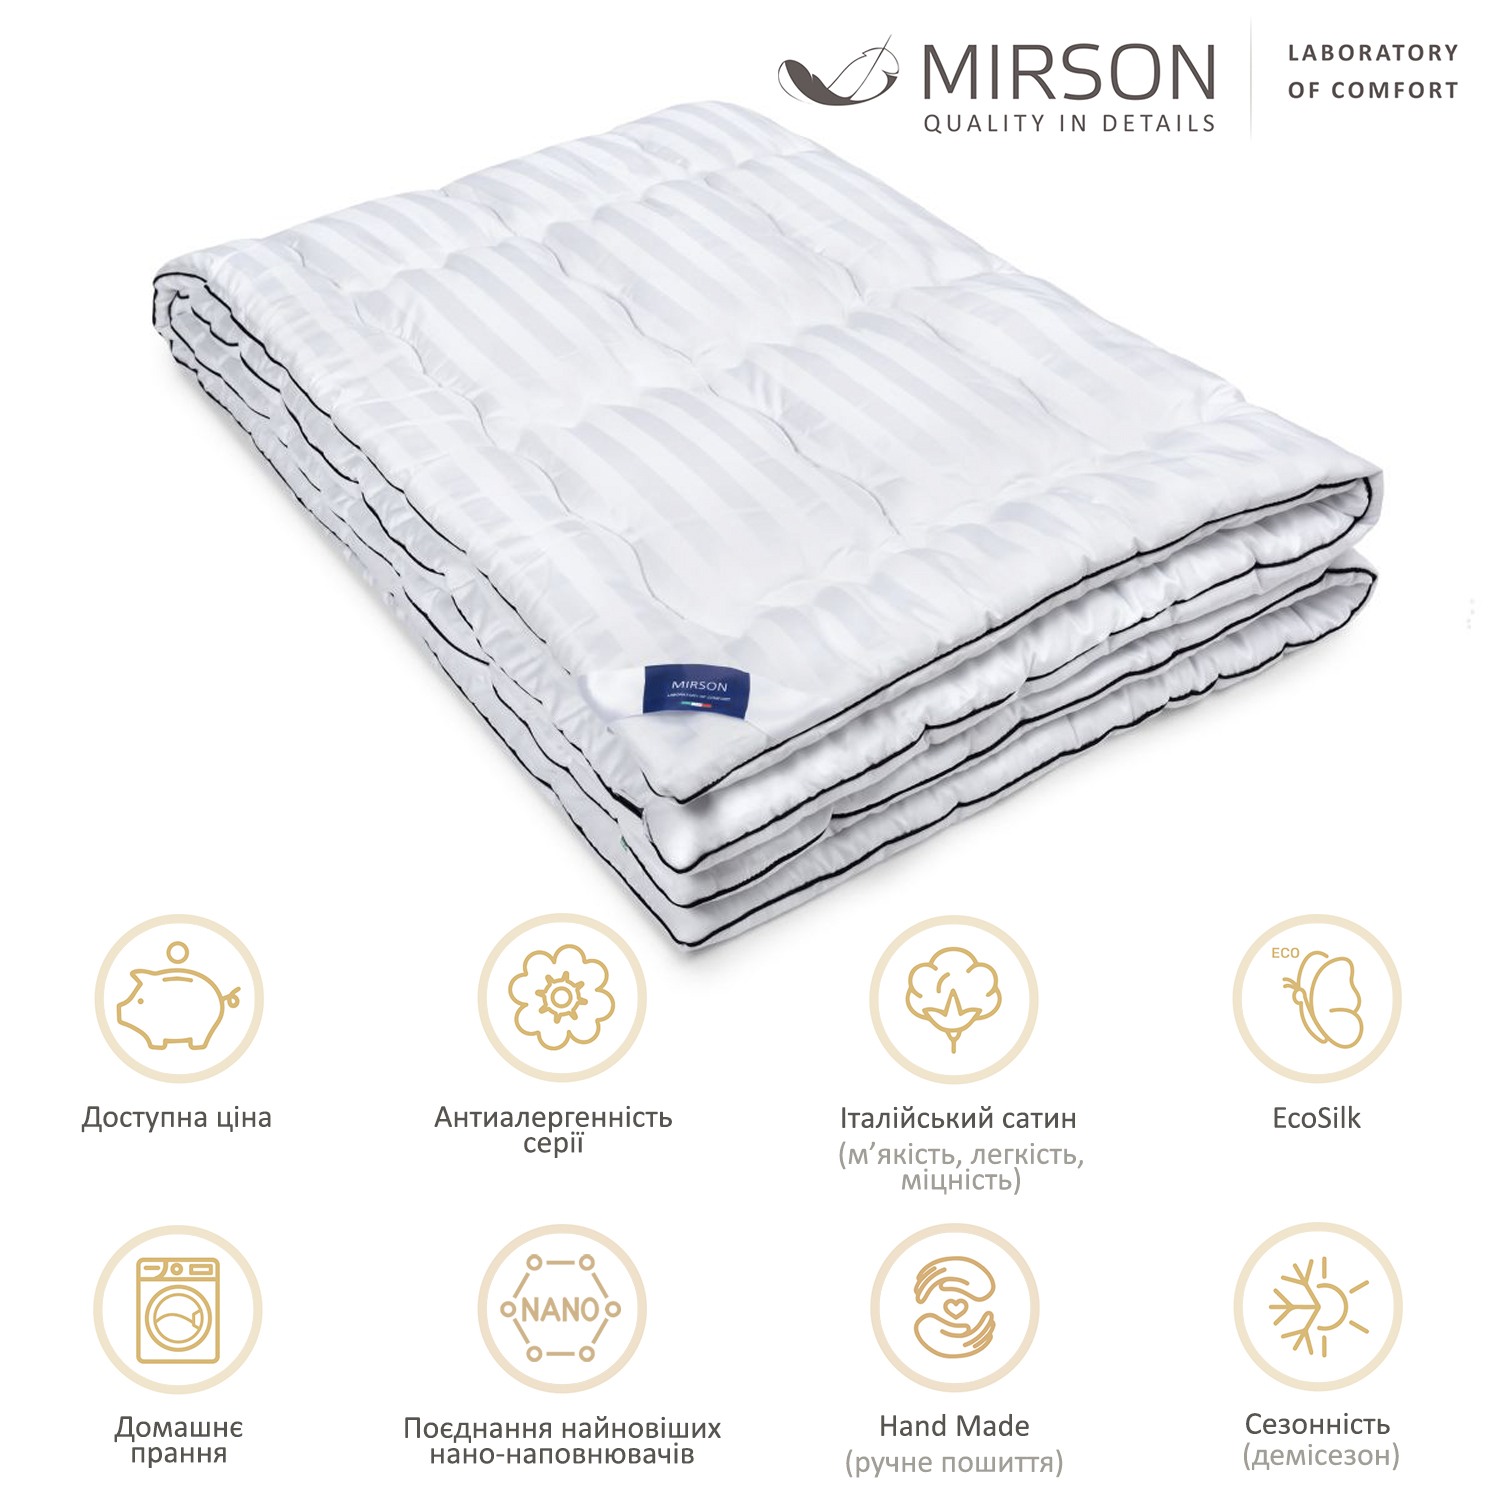 Одеяло антиаллергенное MirSon Royal Pearl Hand Made EcoSilk №066, демисезонное, 155x215 см, белое - фото 5